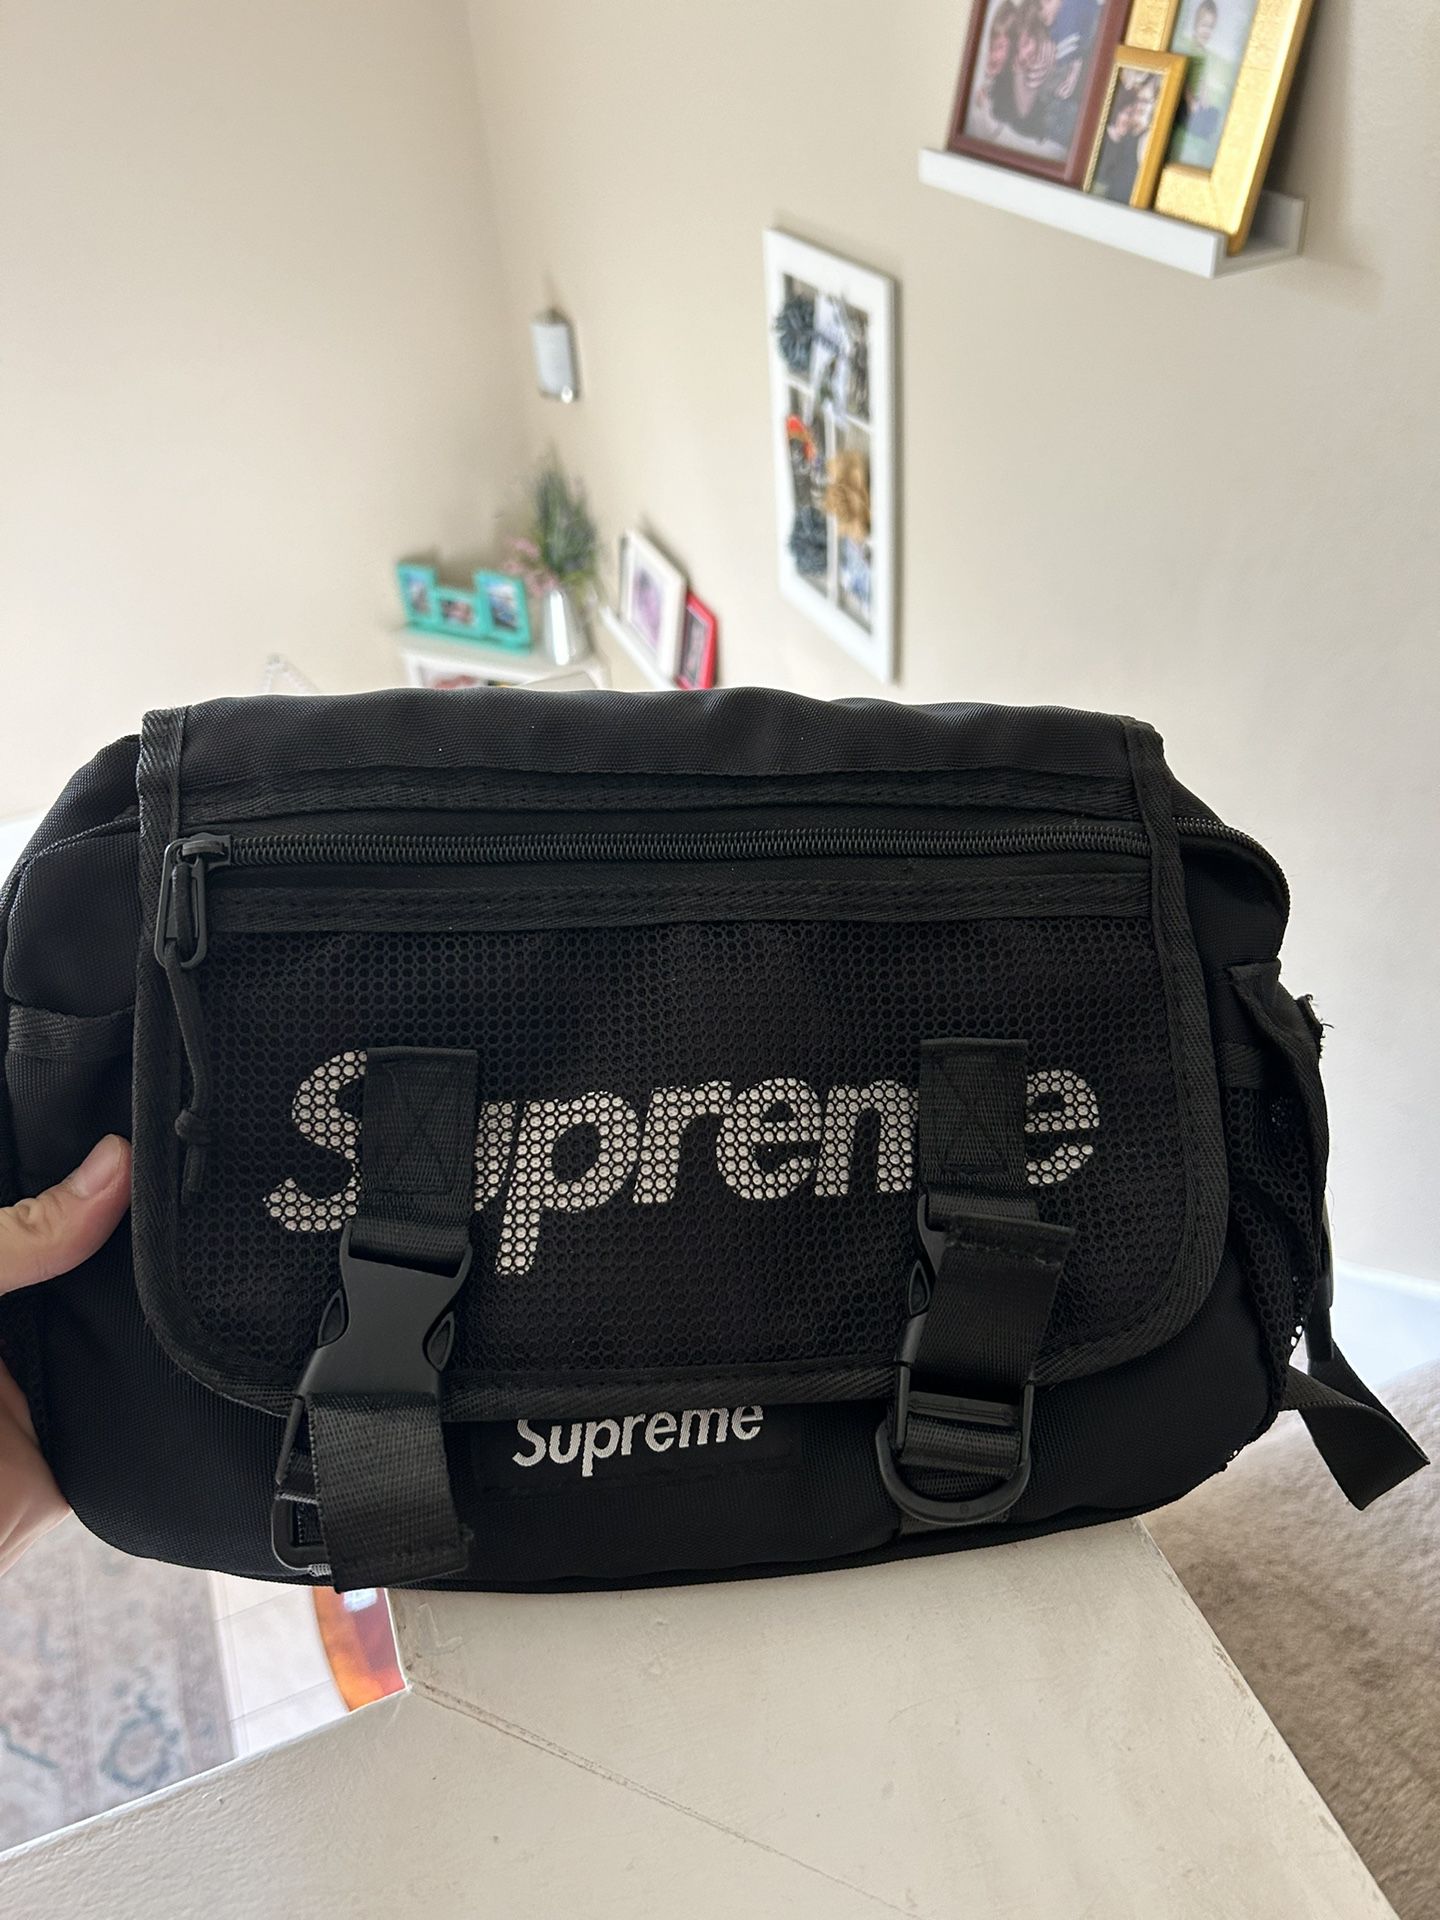 Supreme Side Bag 